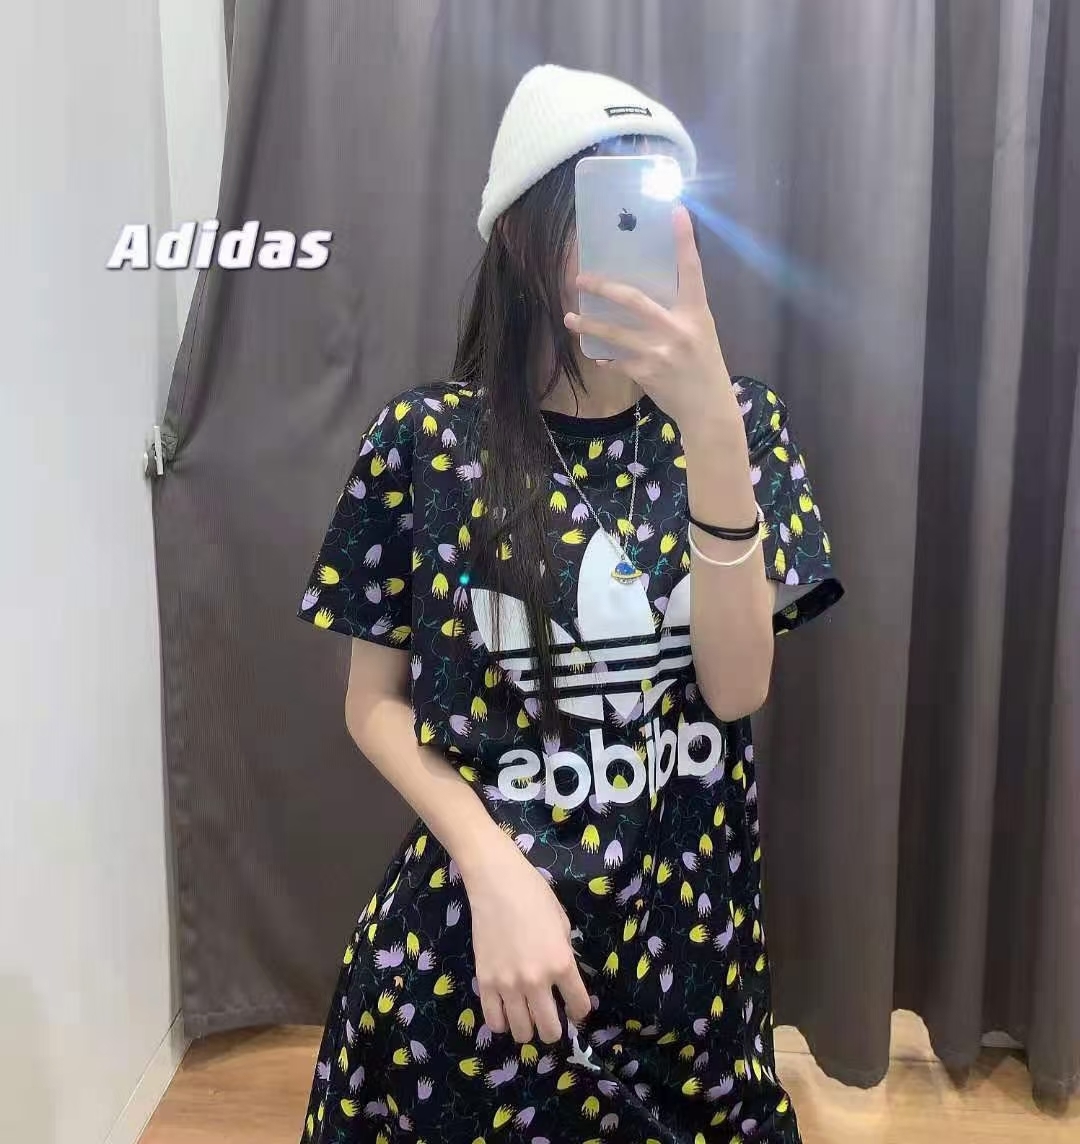 图1_adidas阿迪达斯